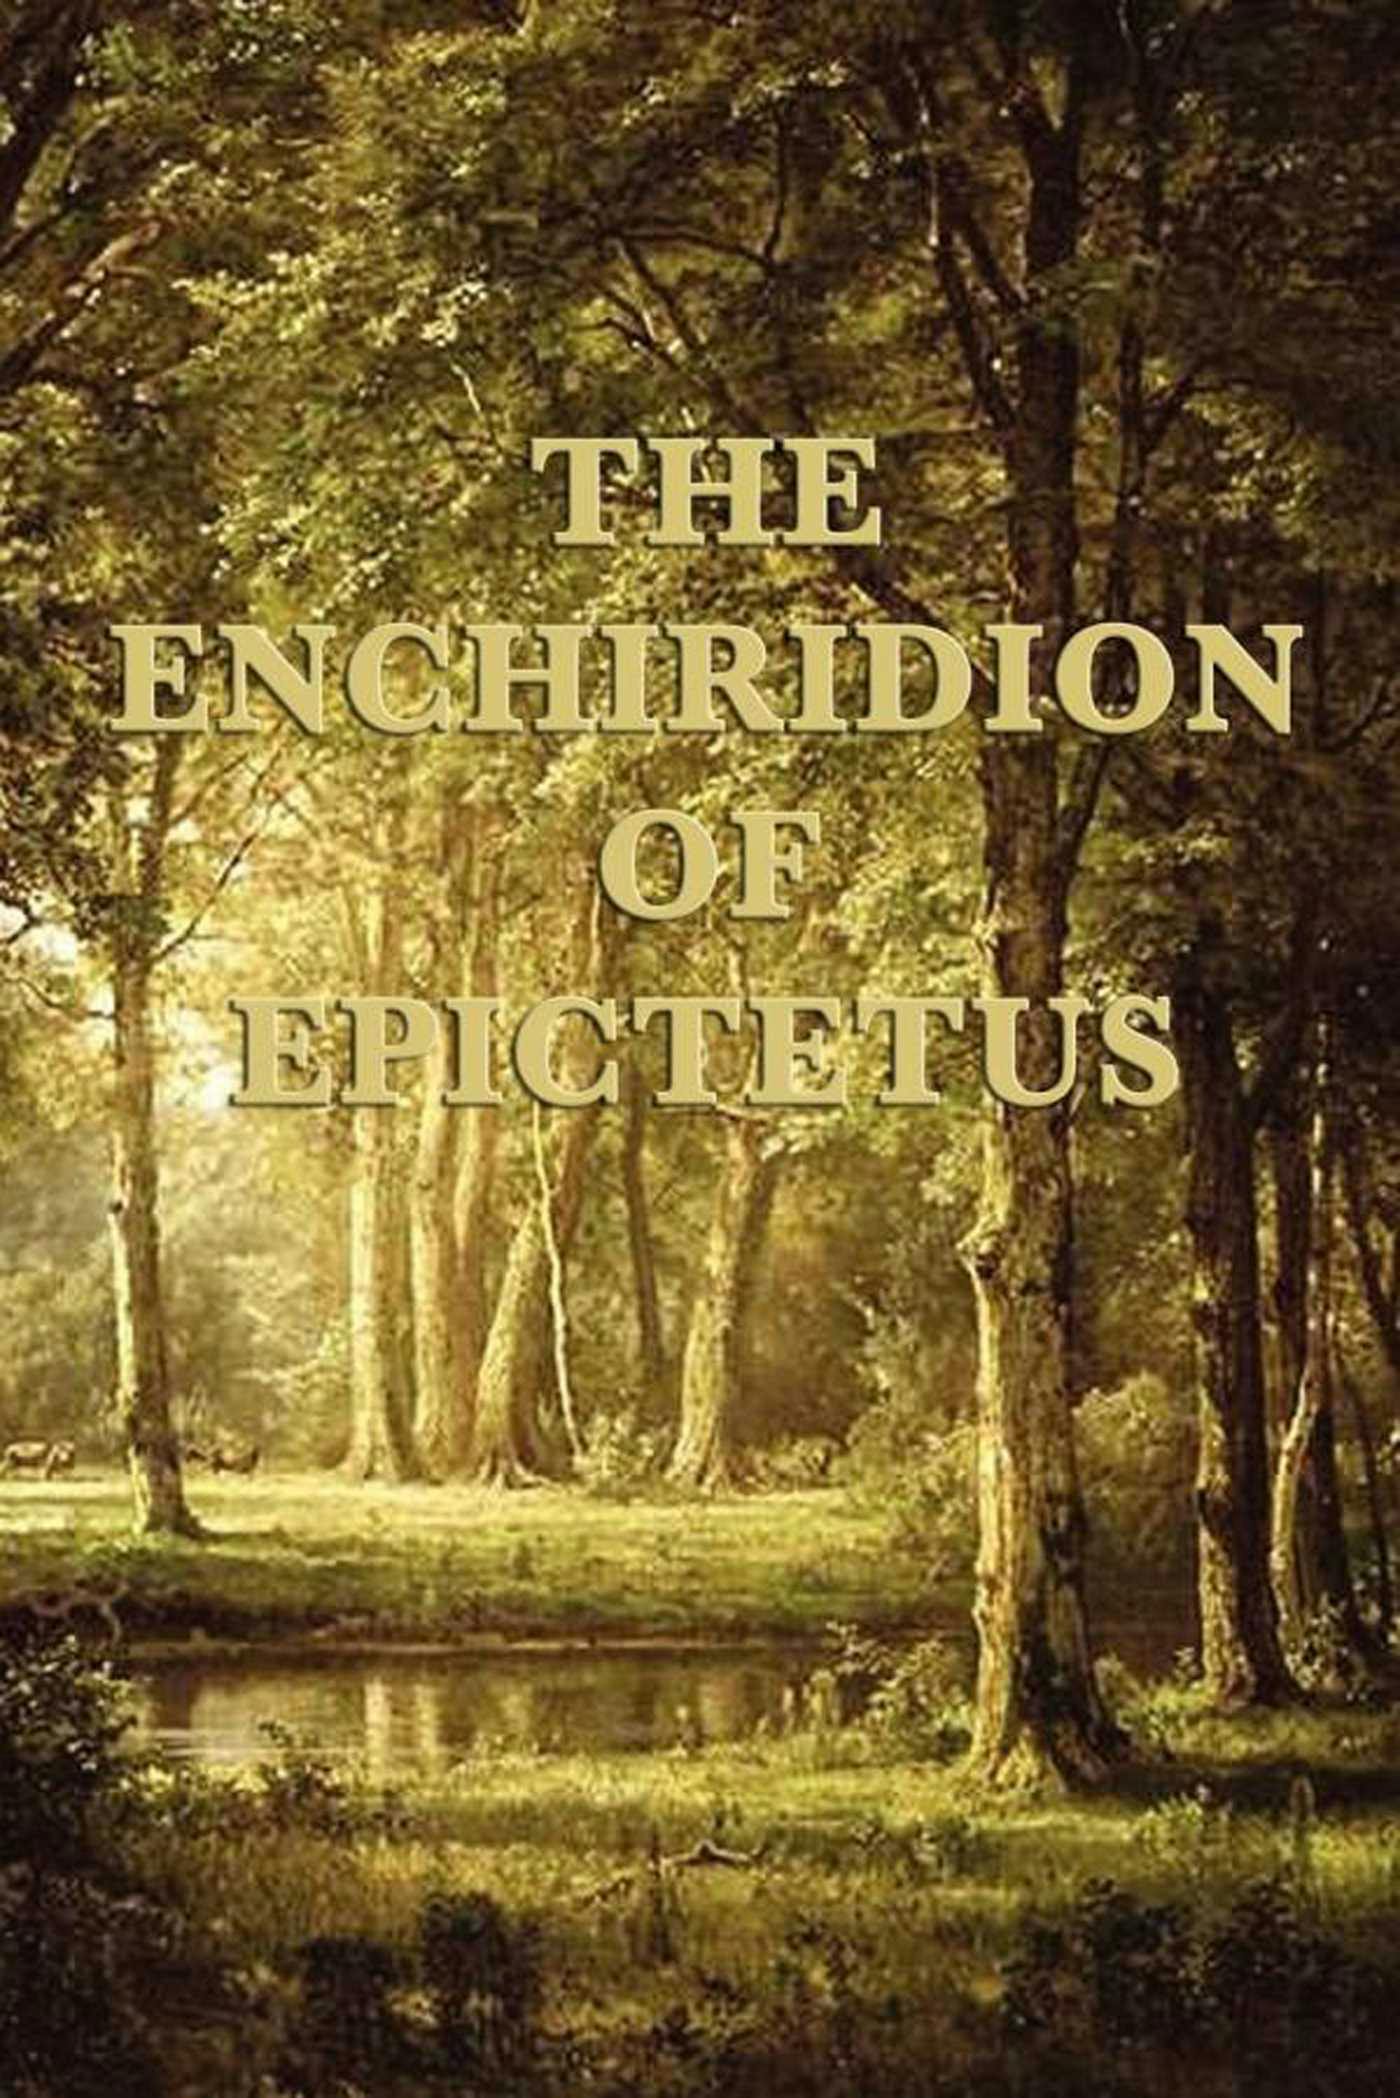 The Enchiridion of Epictetus - undefined